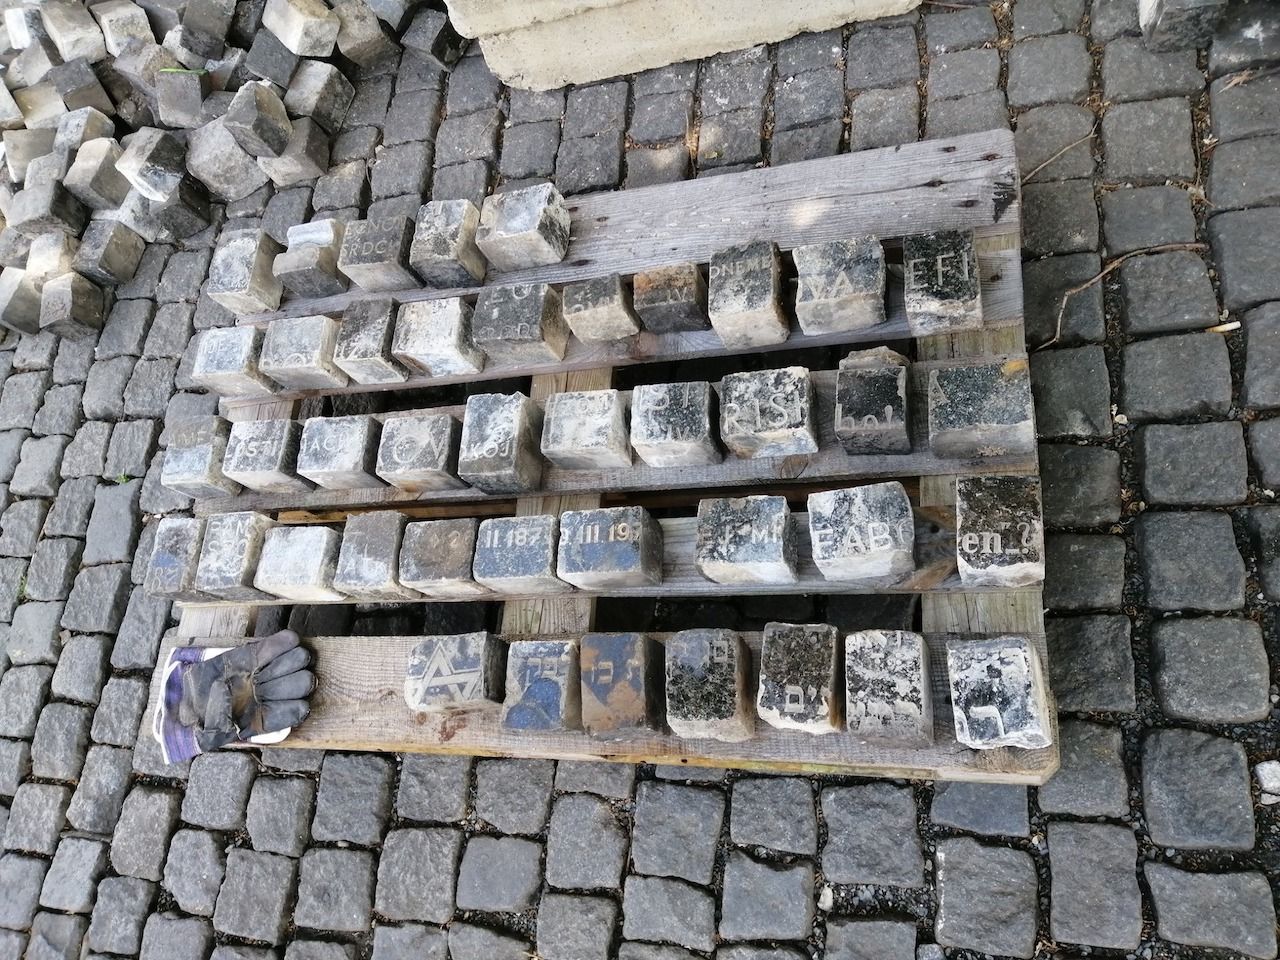 Gravestones in Prague